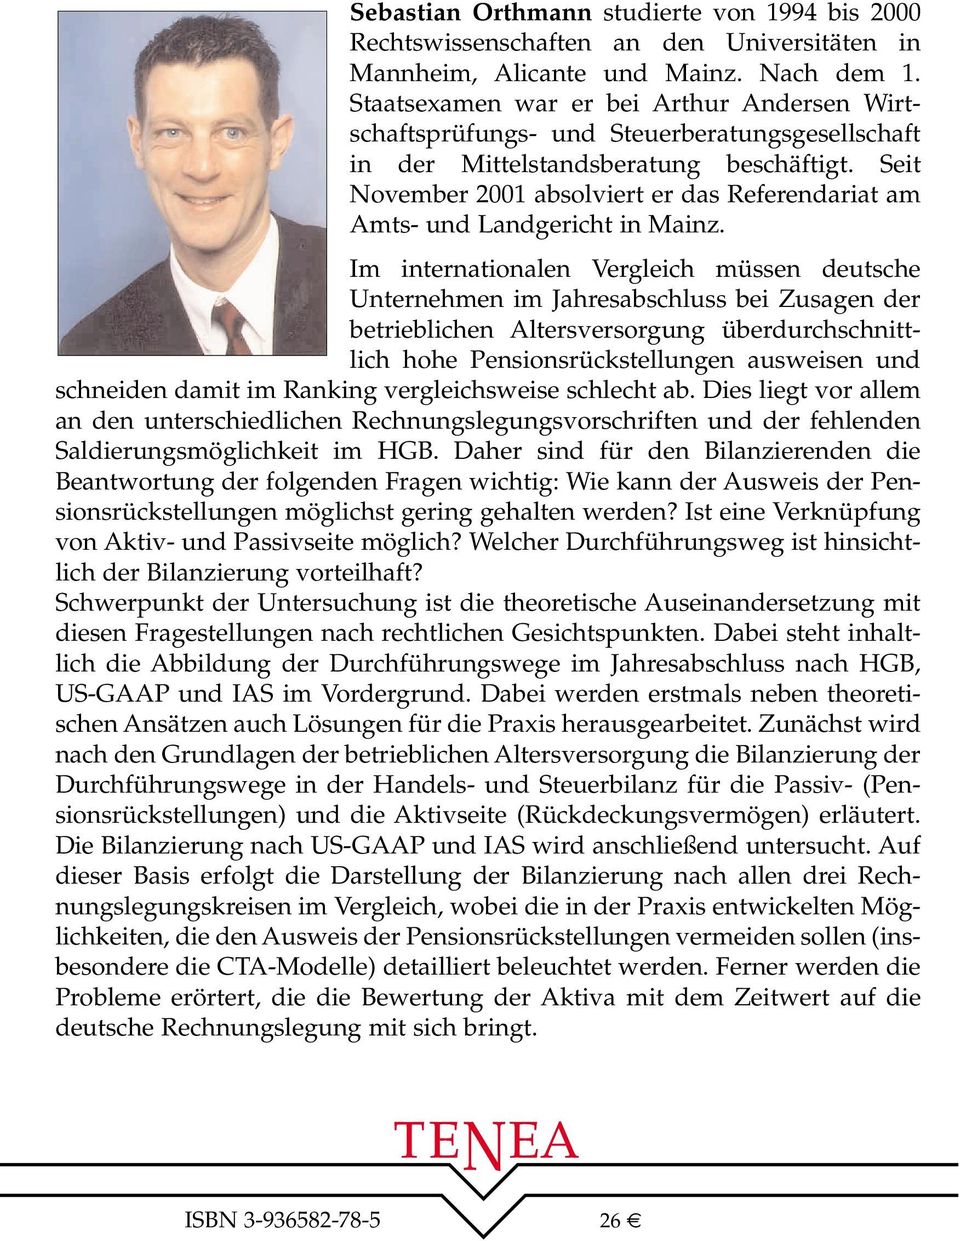 Seit November 2001 absolviert er das Referendariat am Amts- und Landgericht in Mainz.